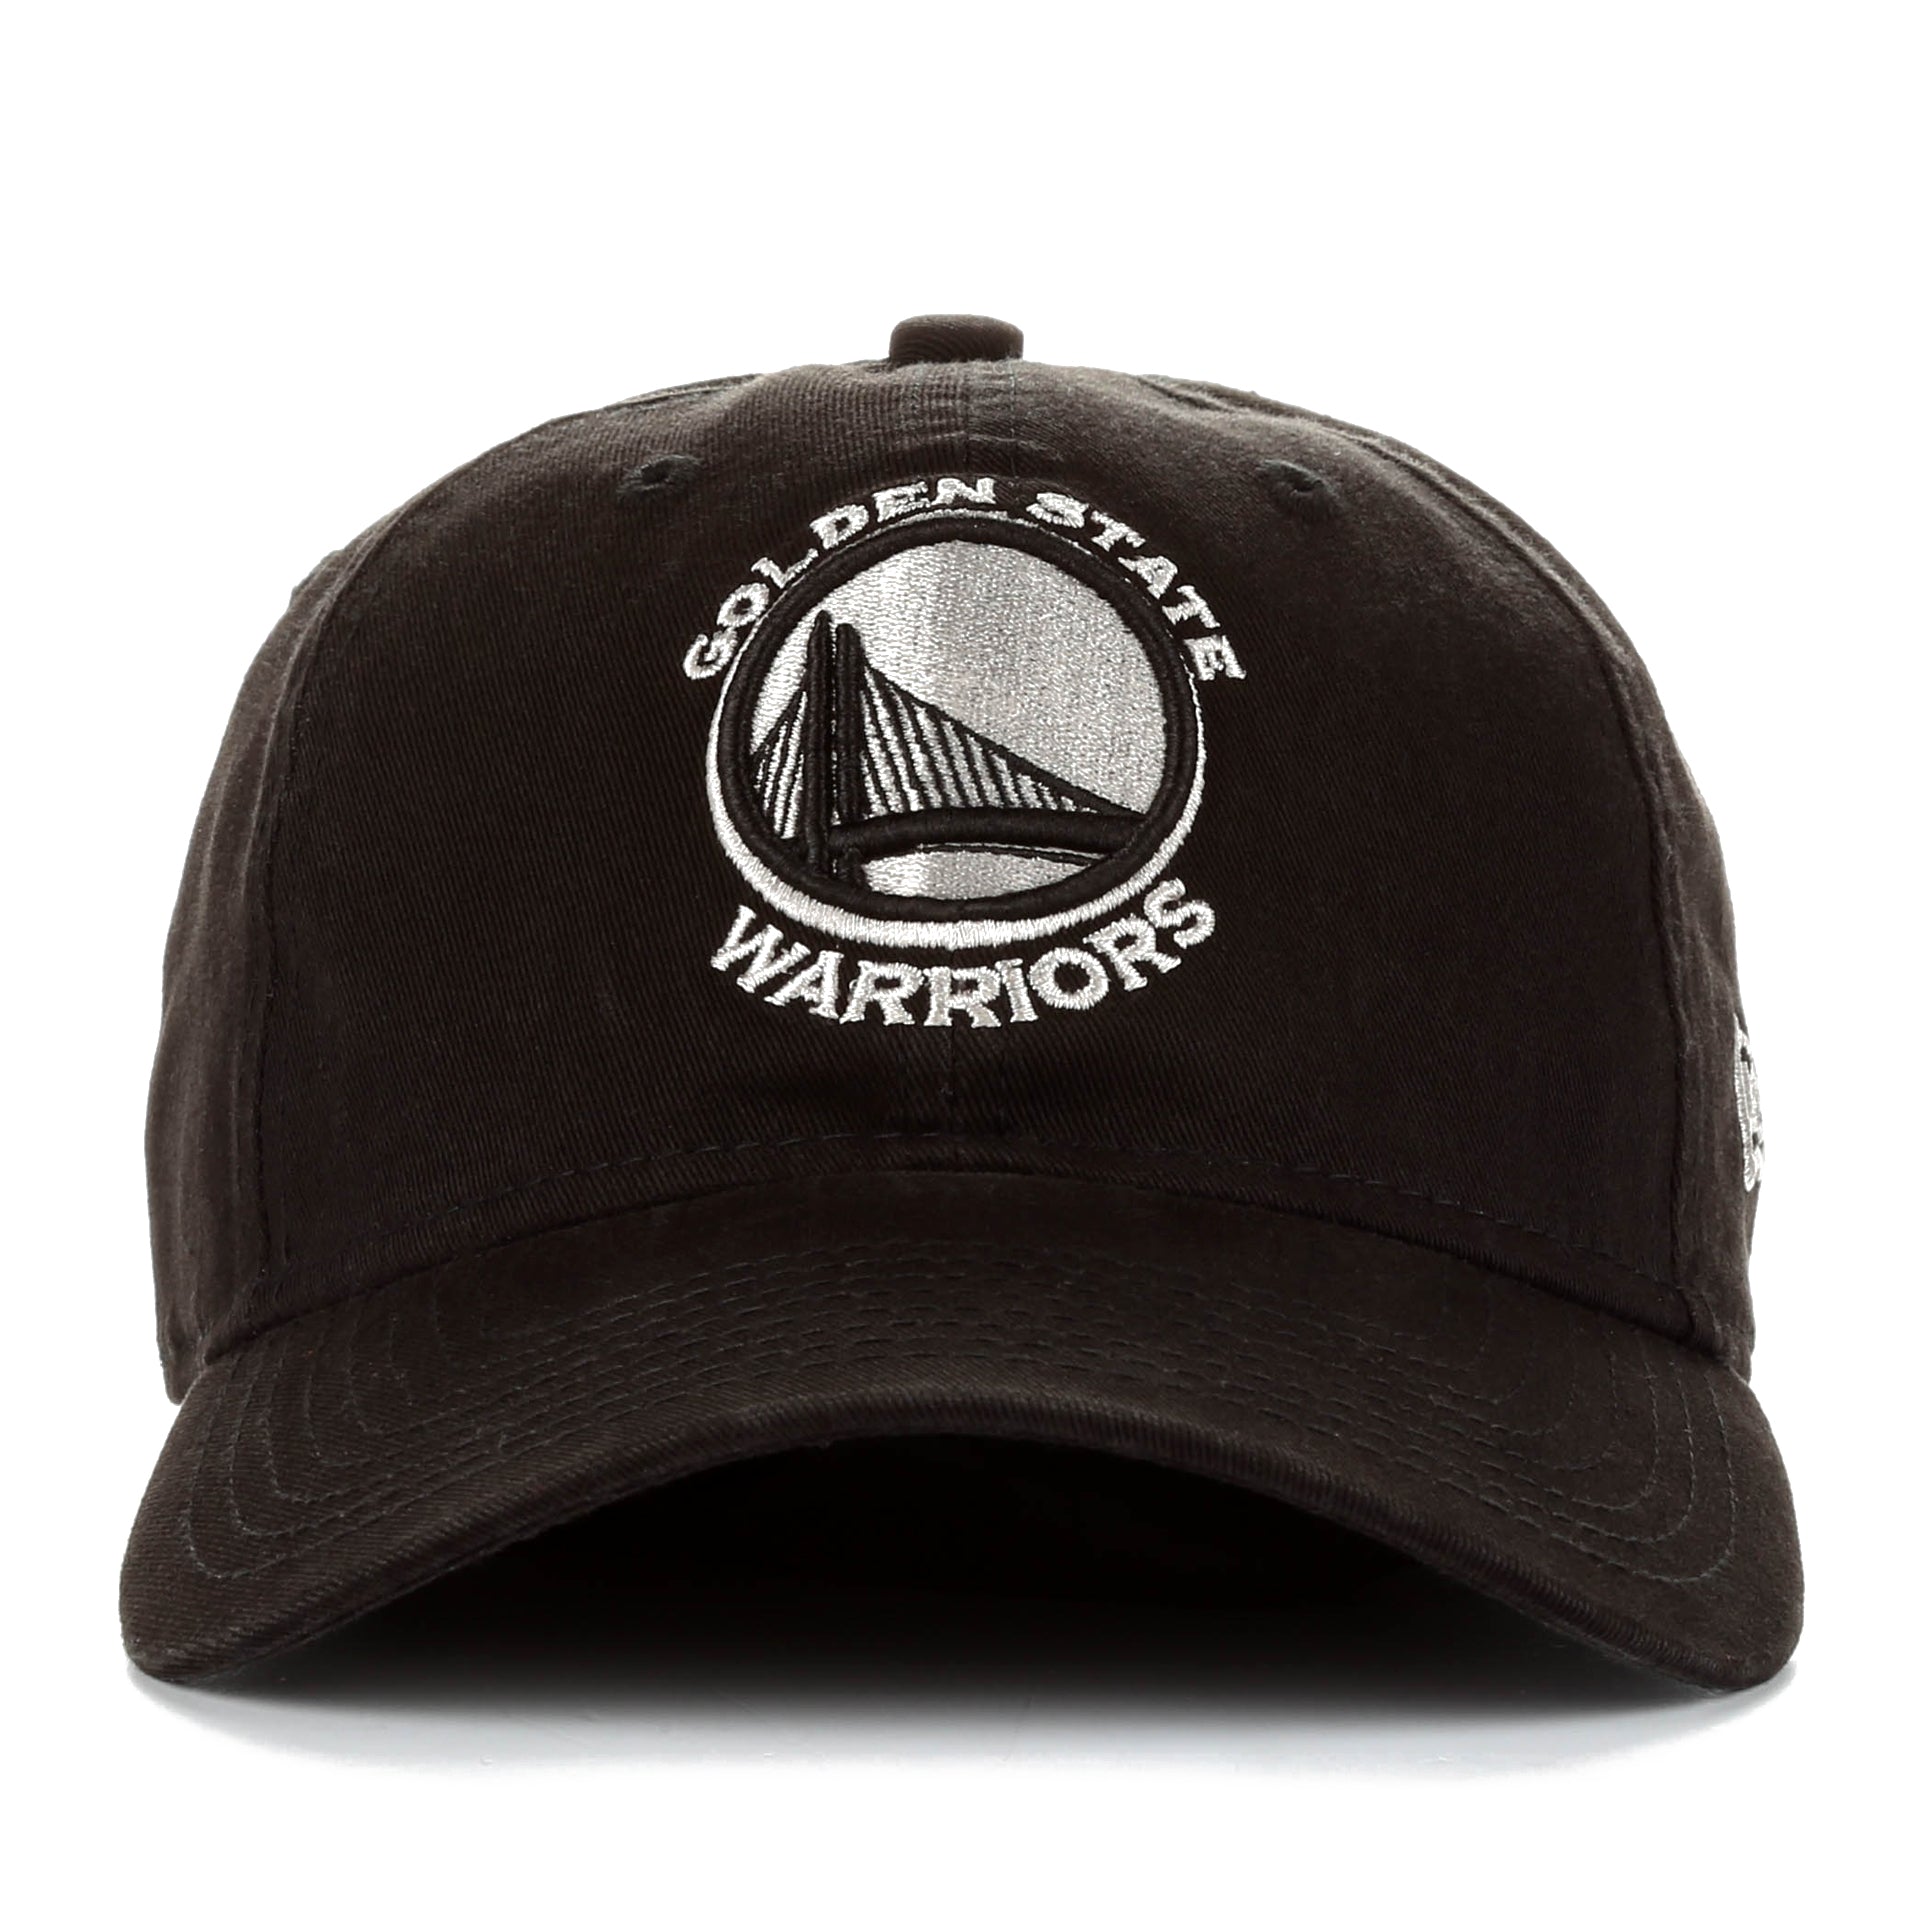 Vintage Golden State Warrior Cap Adjustable Snapback NBA Hat